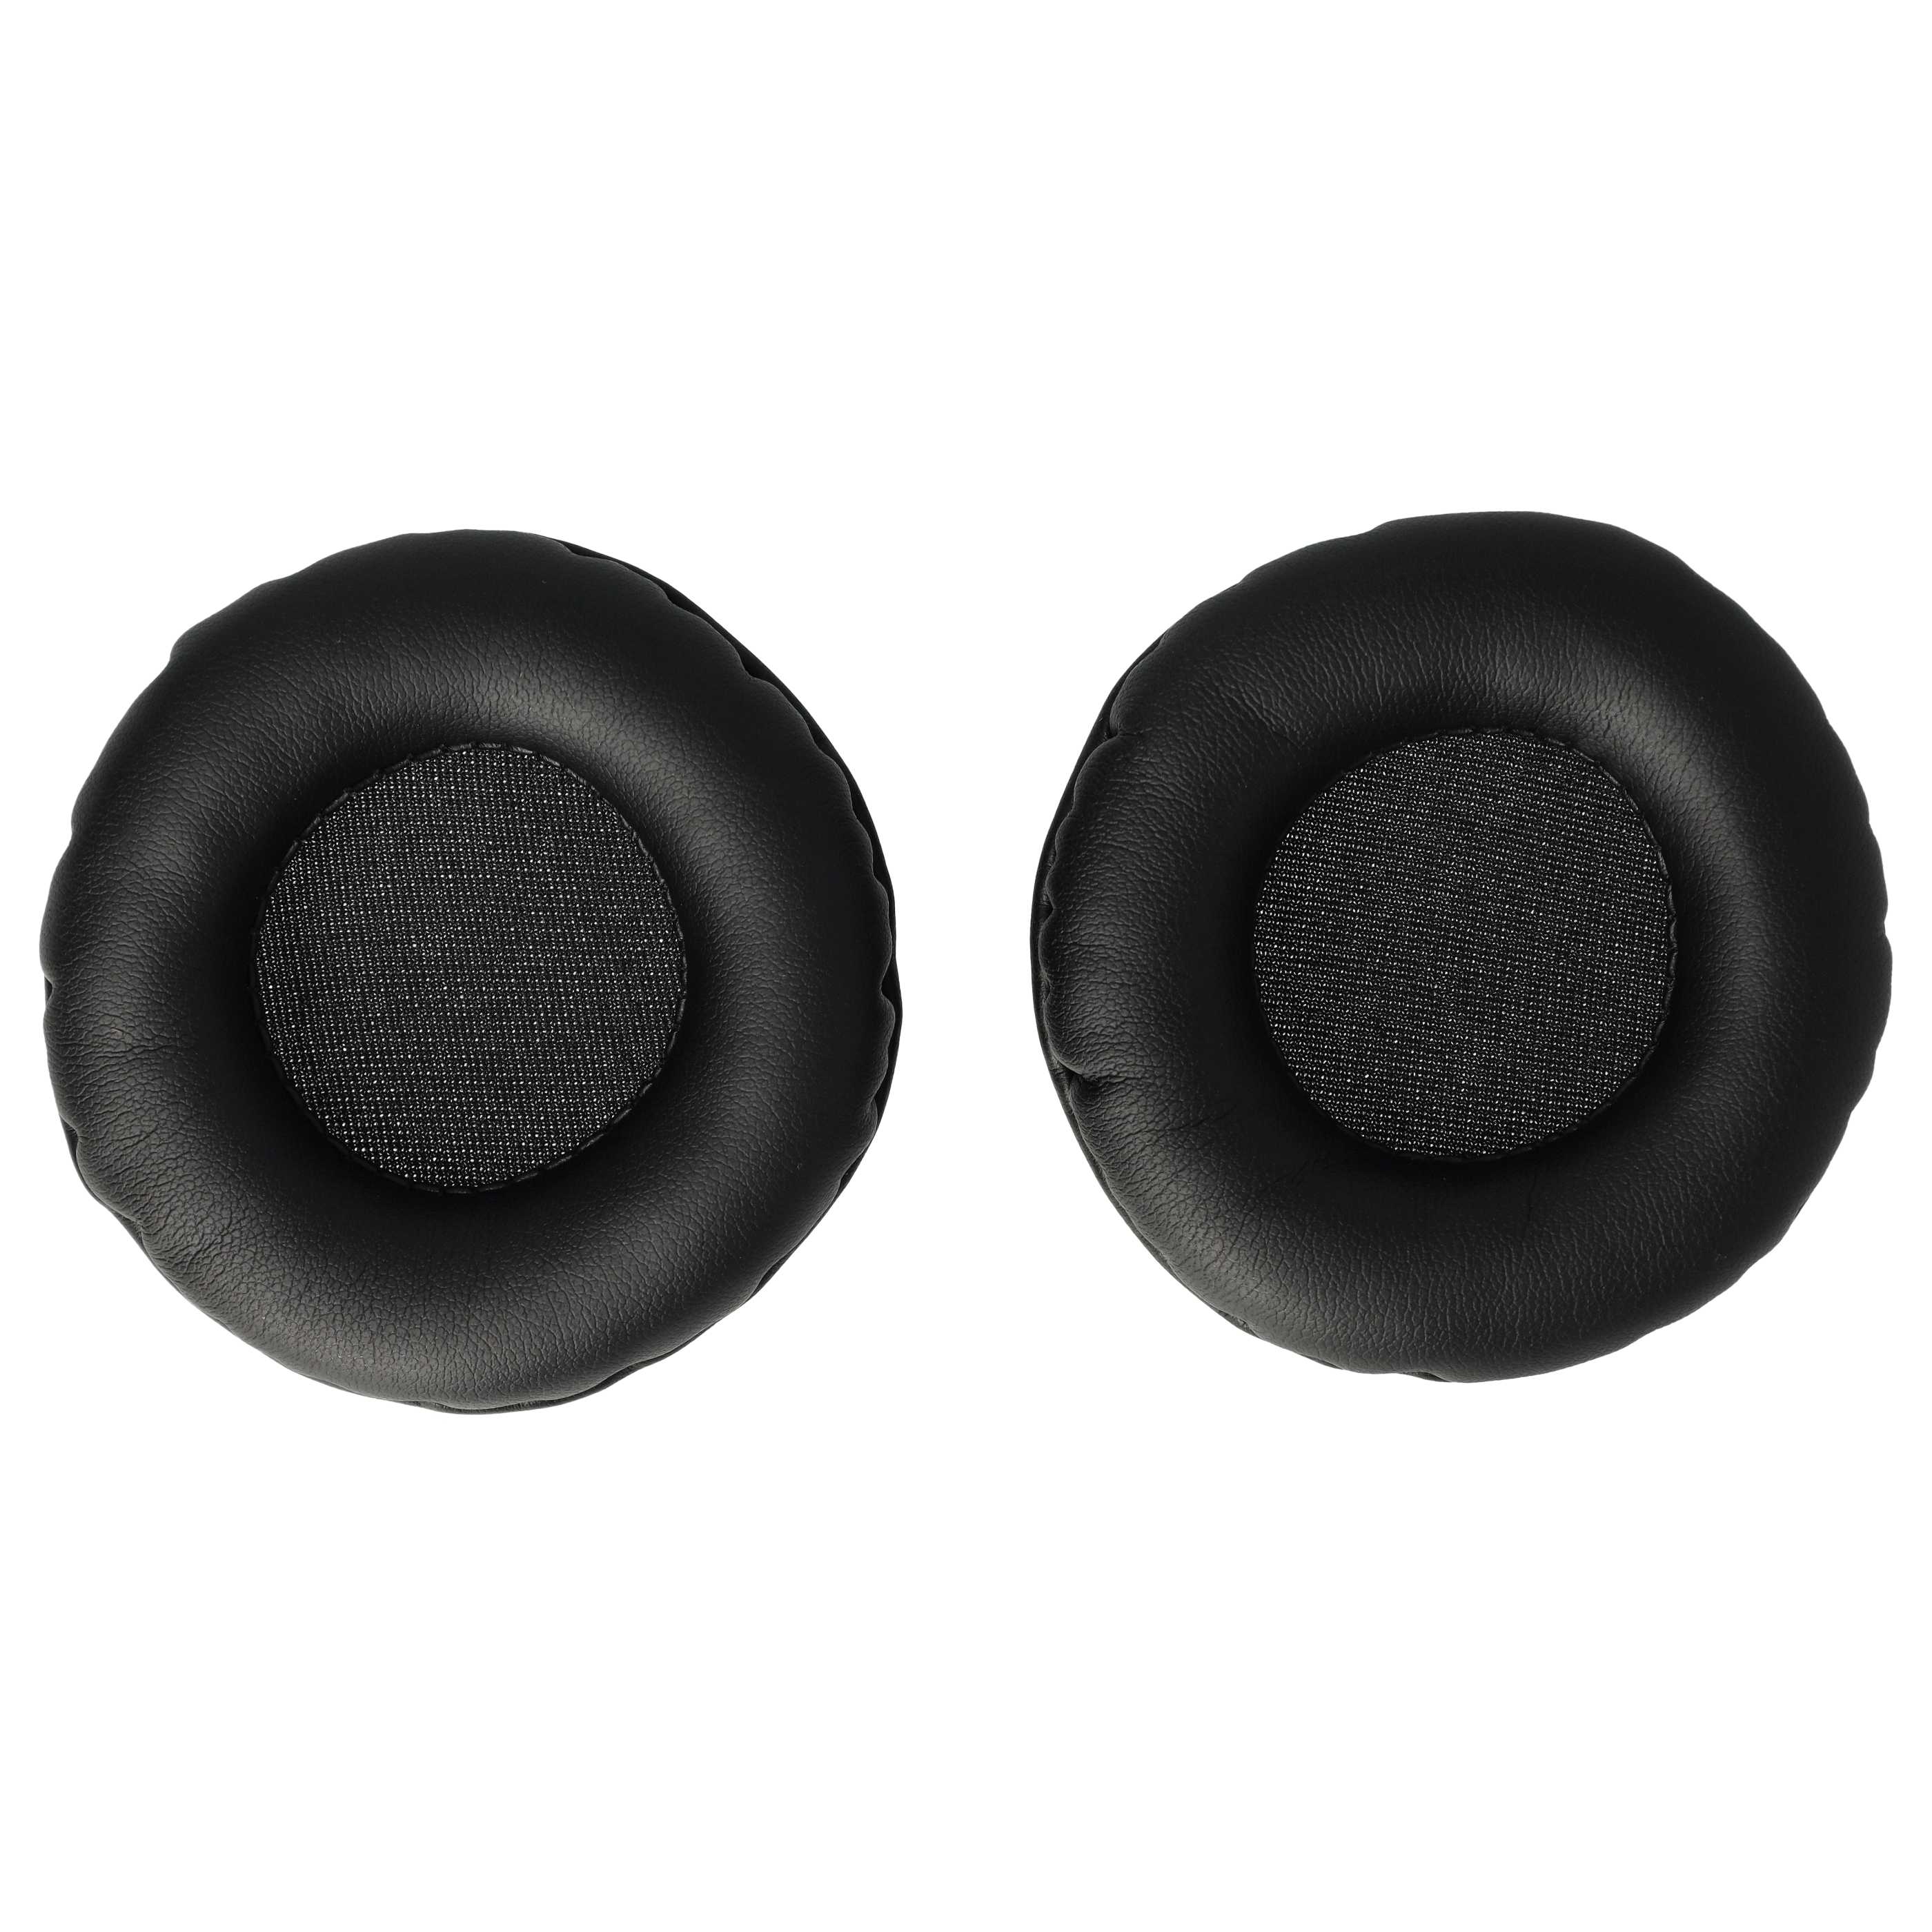 2x Poduszki do słuchawek słuchawek z nausznikami 65 mm / t.Bone HD 660 - pady śr. 6,5 cm , czarny